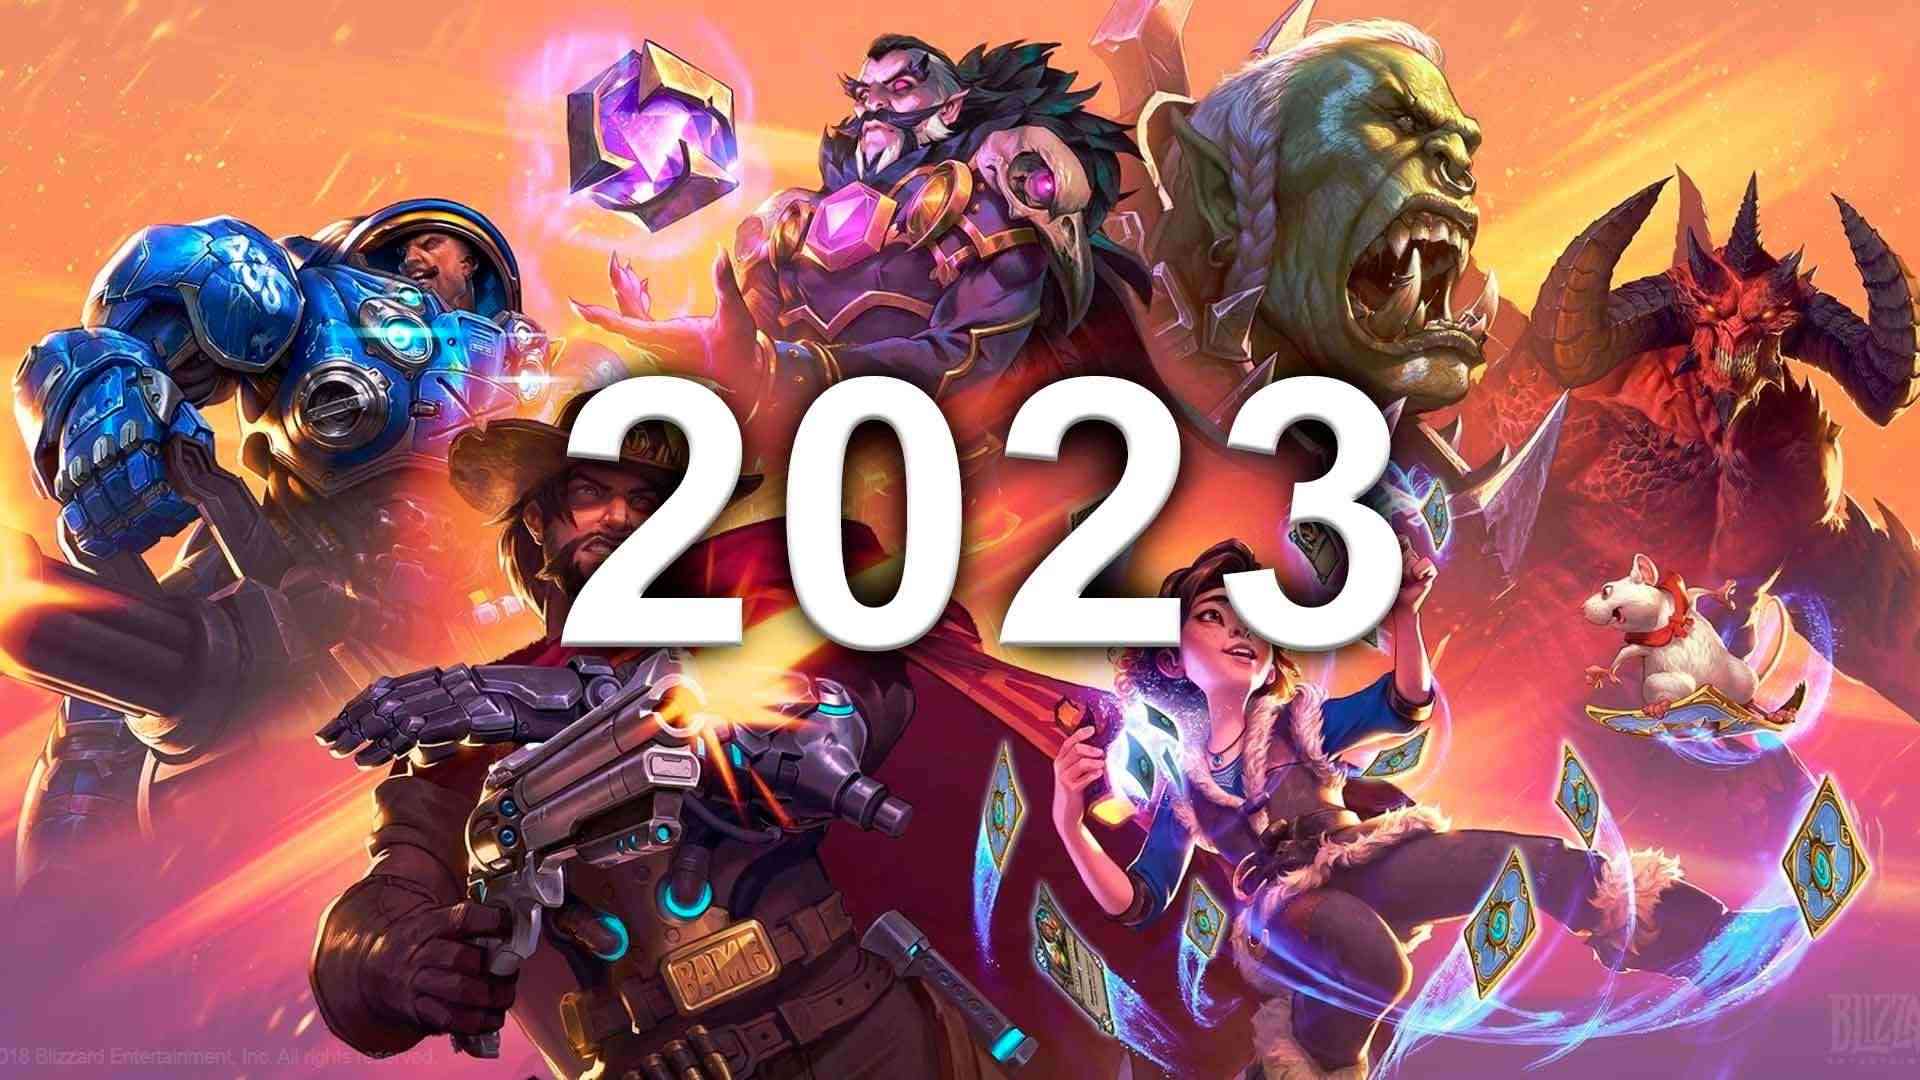 BlizzCon xác nhận sẽ trở lại vào 2023 sau những biến cố gần đây